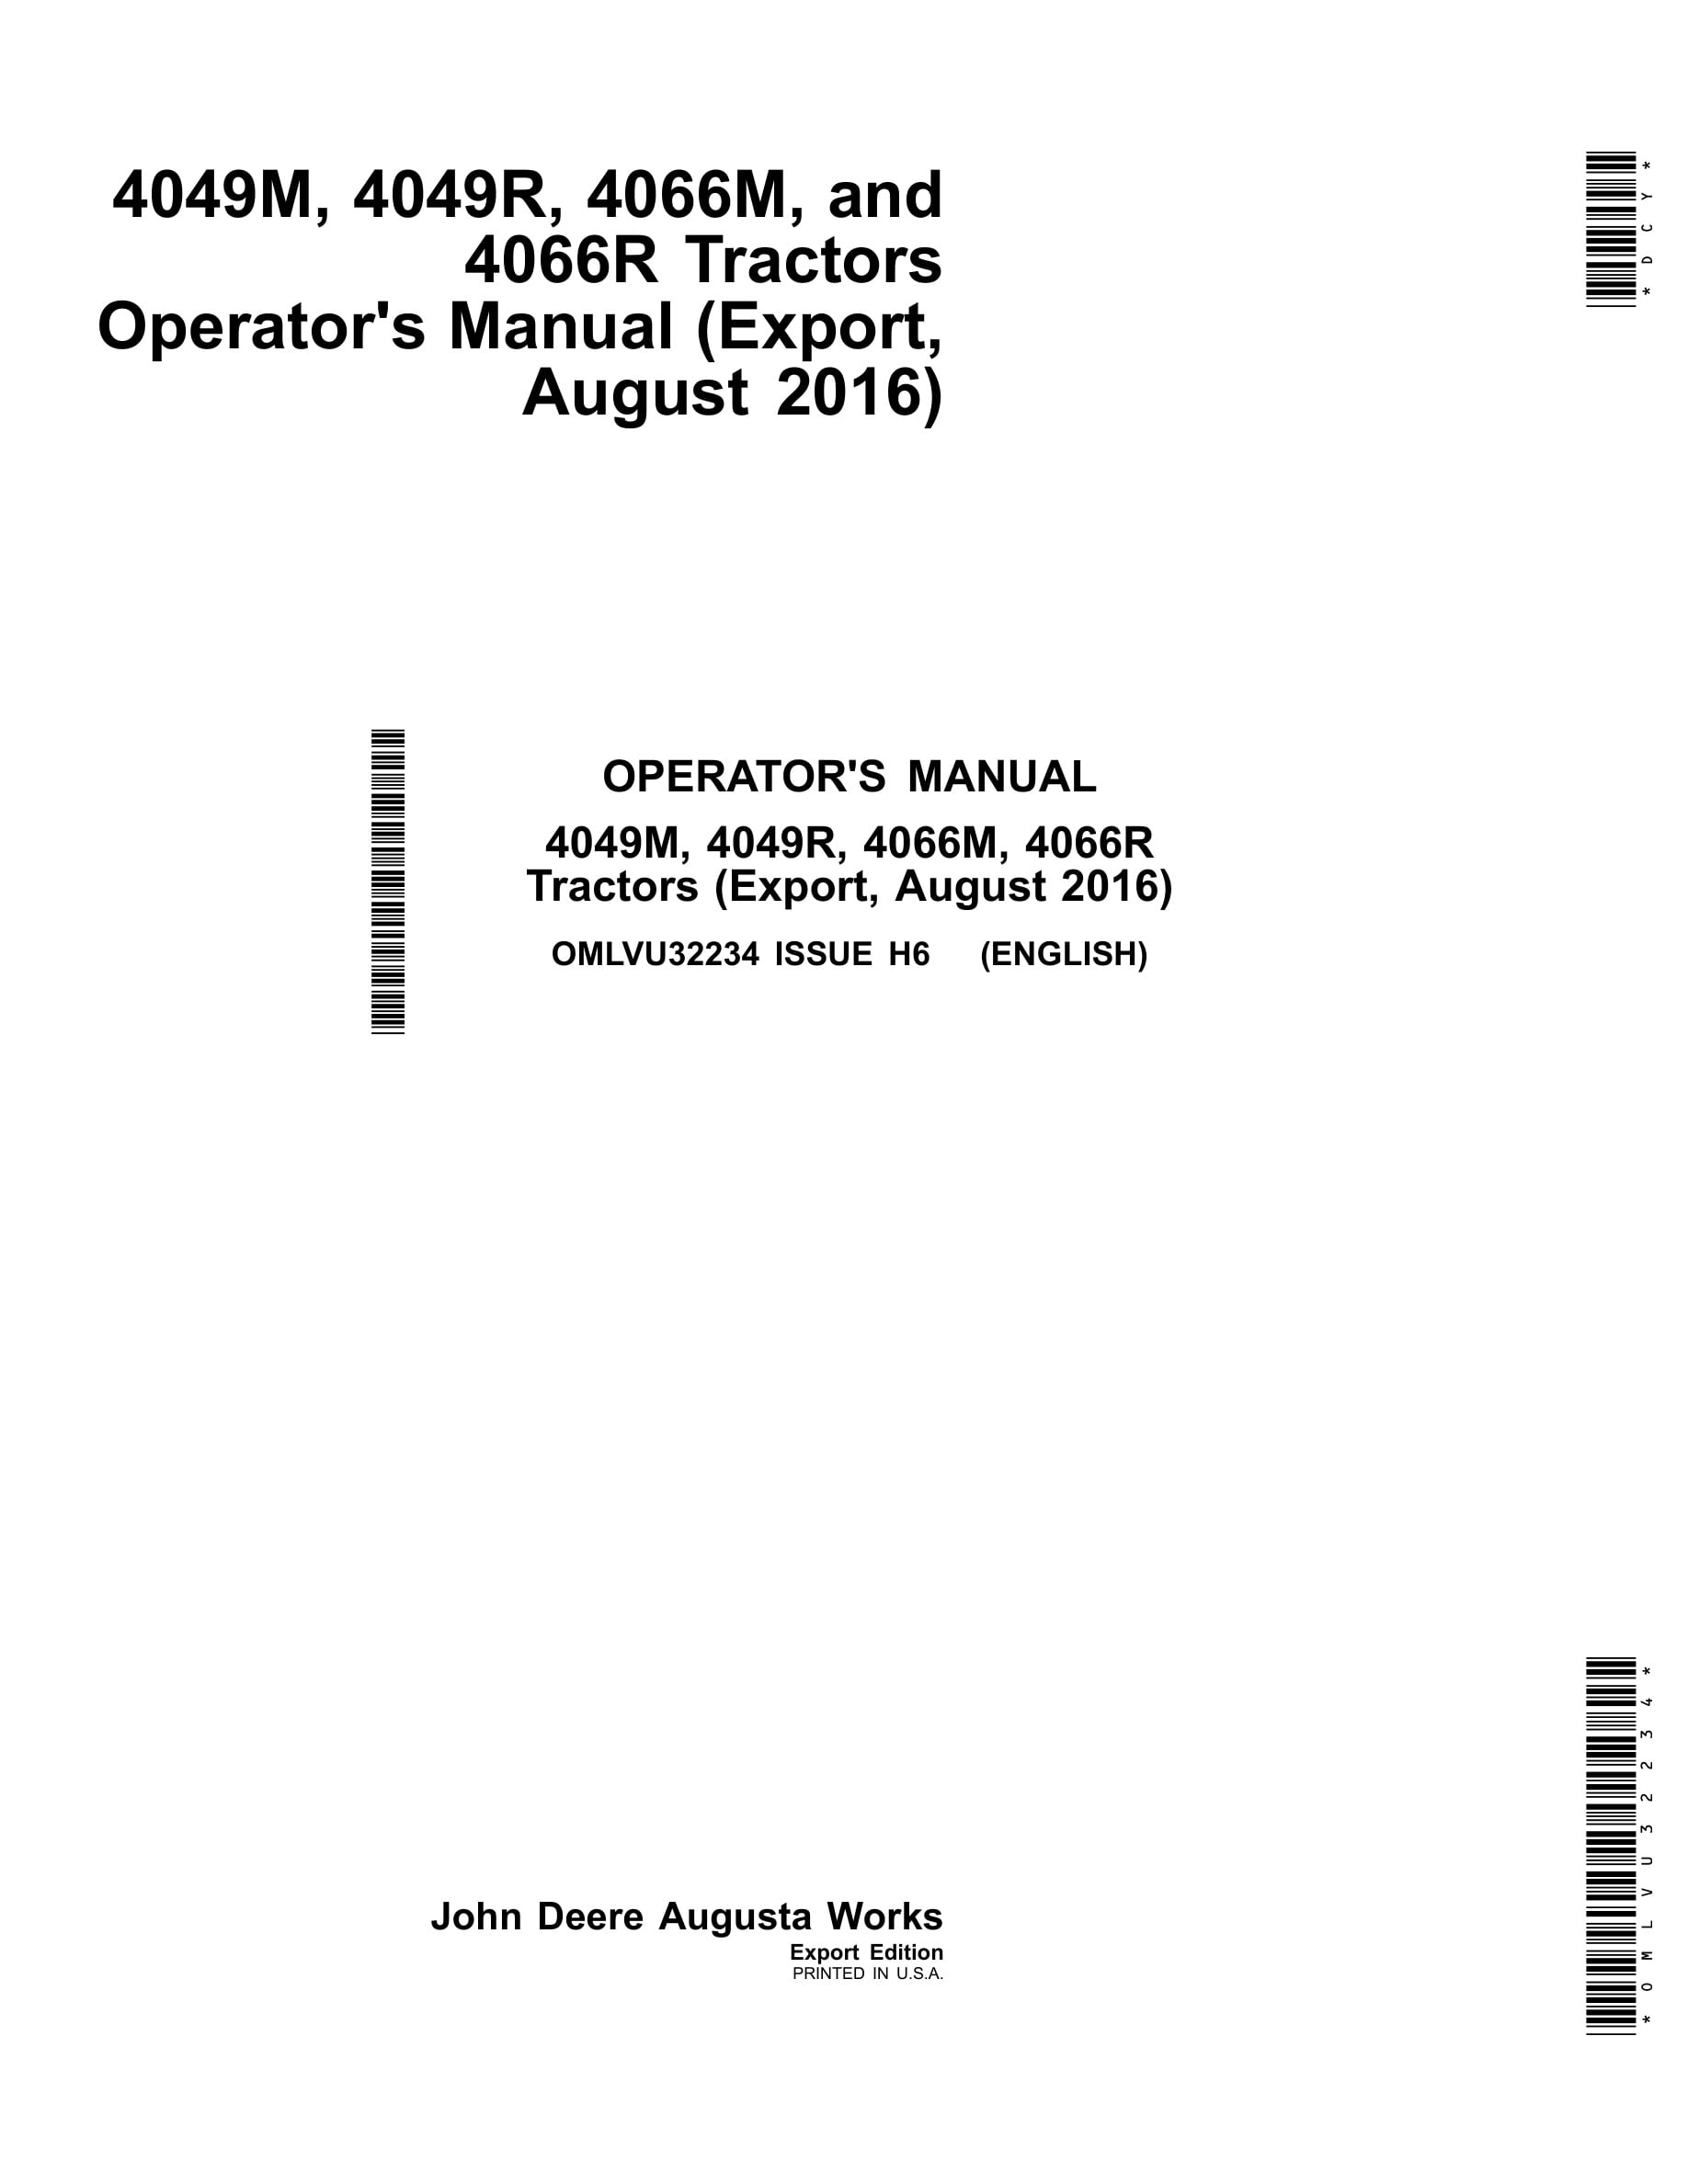 John Deere 4049m, 4049r, 4066m, 4066r Tractors Operator Manuals OMLVU32234-1